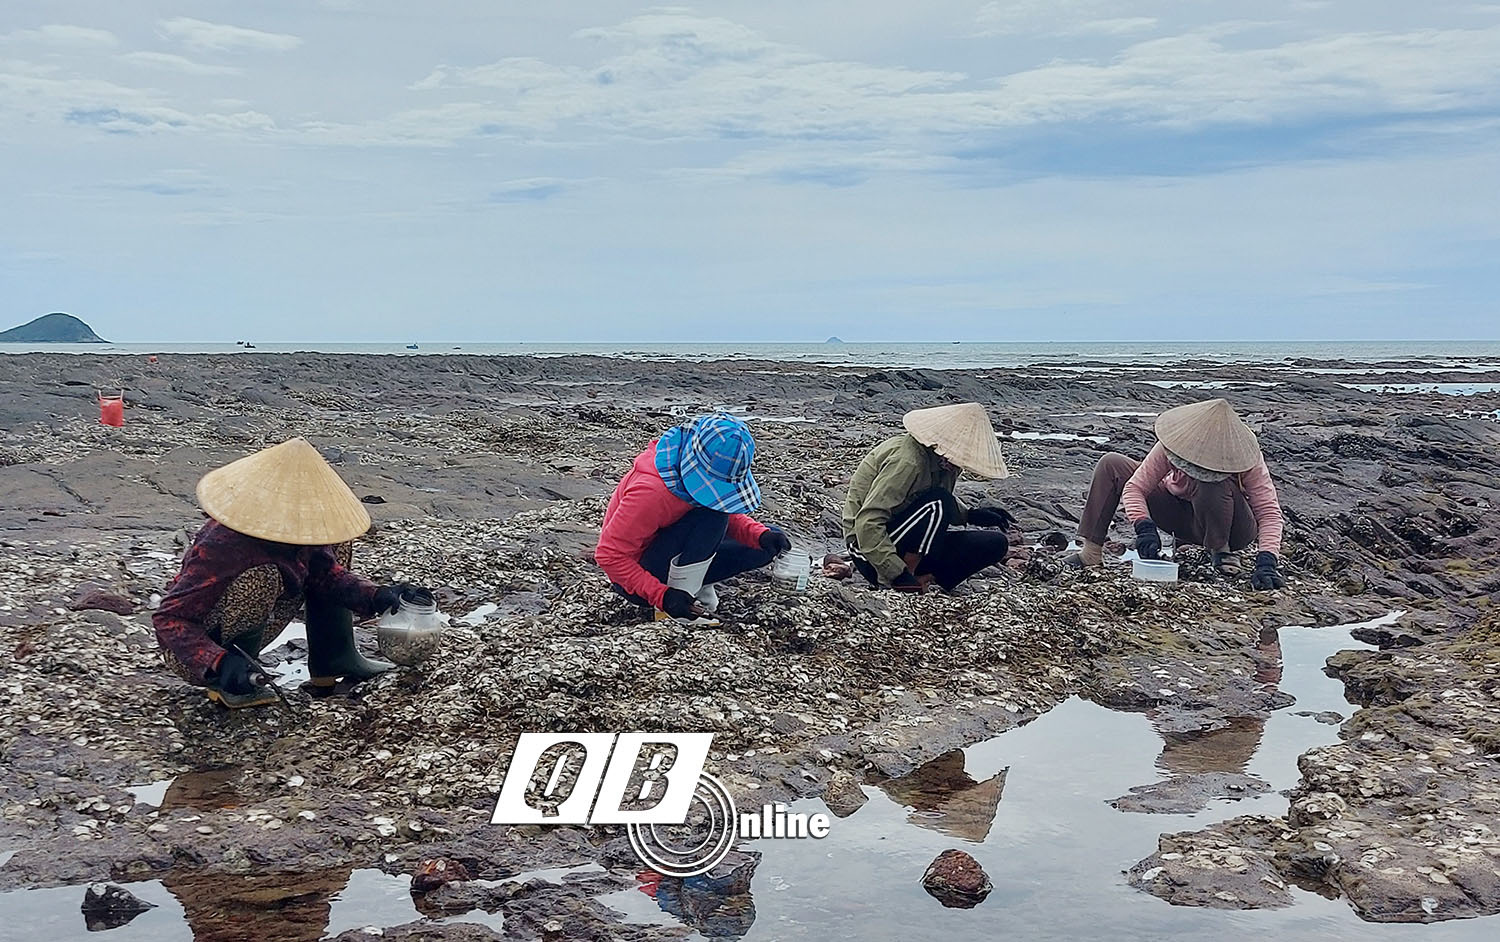 Đội nắng hành nghề gõ &quot;cóc, cóc, cóc&quot;  trên đá ở bãi biển Quảng Bình, mỗi ngày dân kiếm vài trăm ngàn - Ảnh 3.